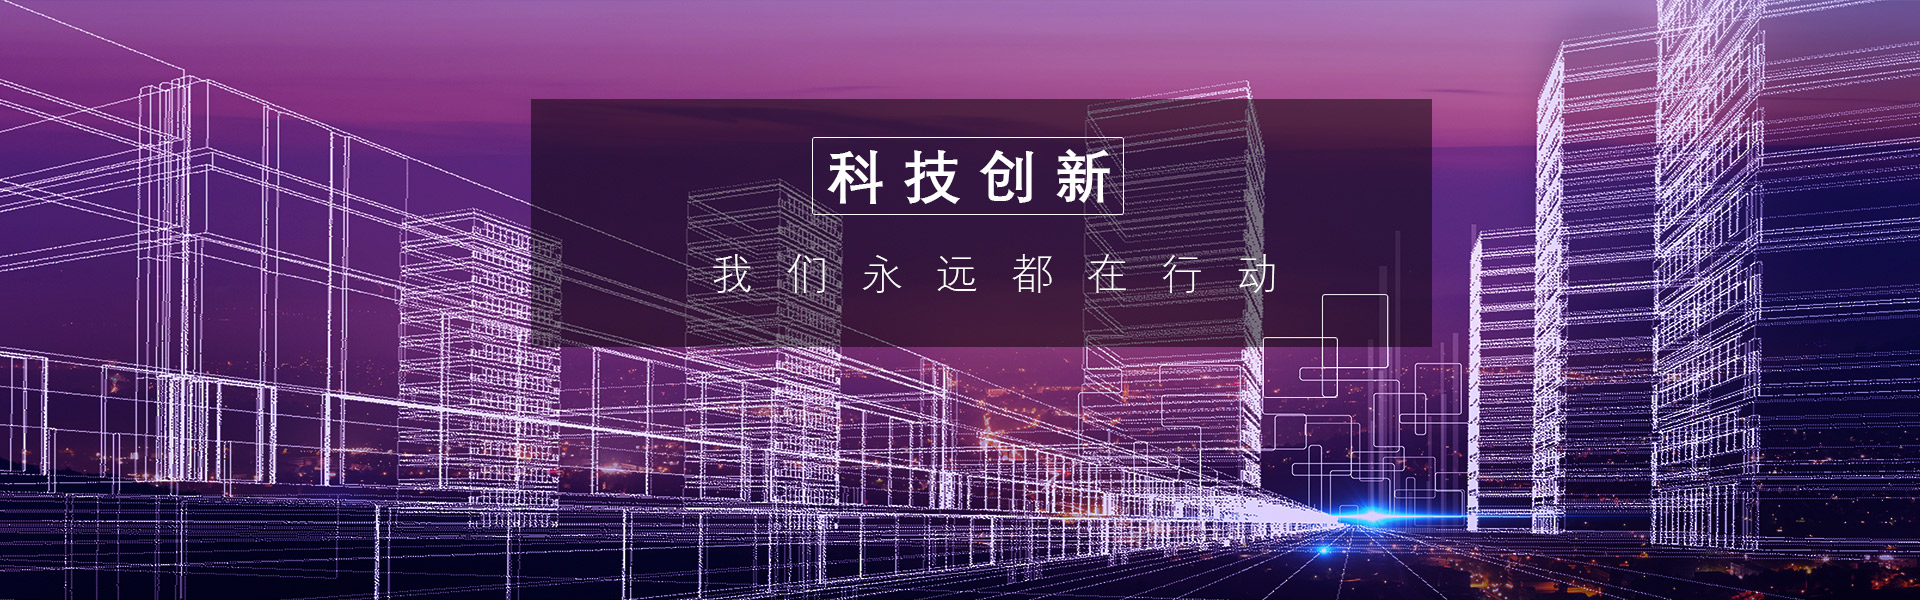 创新科技_广州市天谱电器有限公司官方网站_广州市天谱电器有限公司